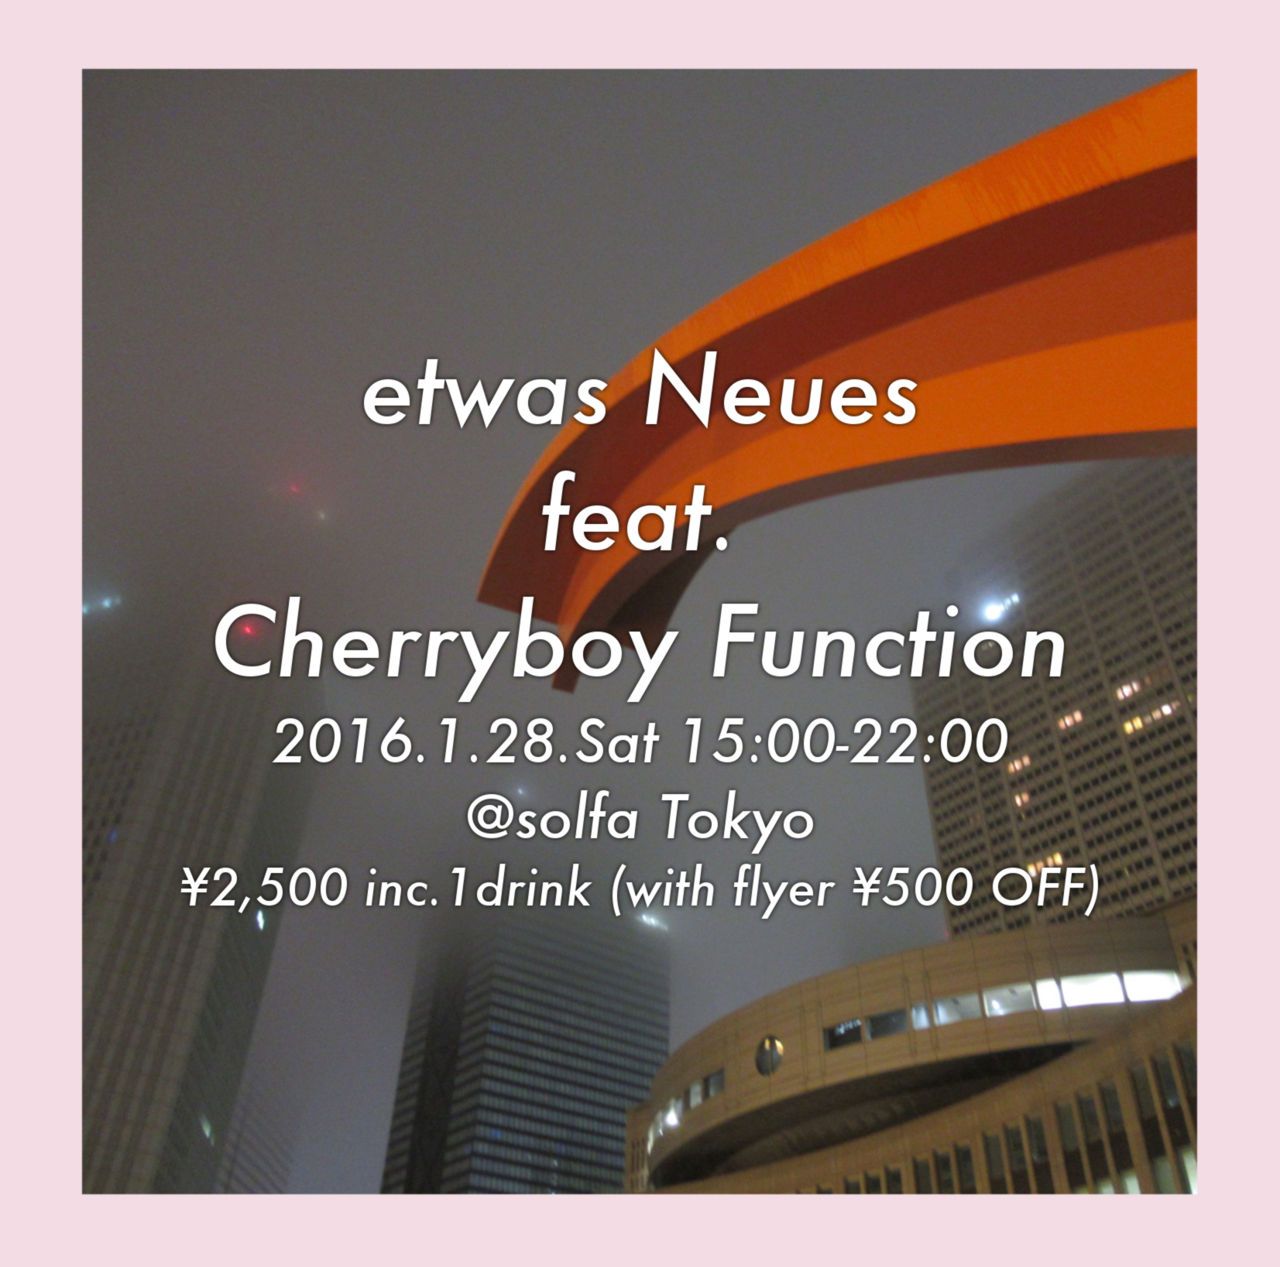 etwas Neues feat. Cherryboy Function